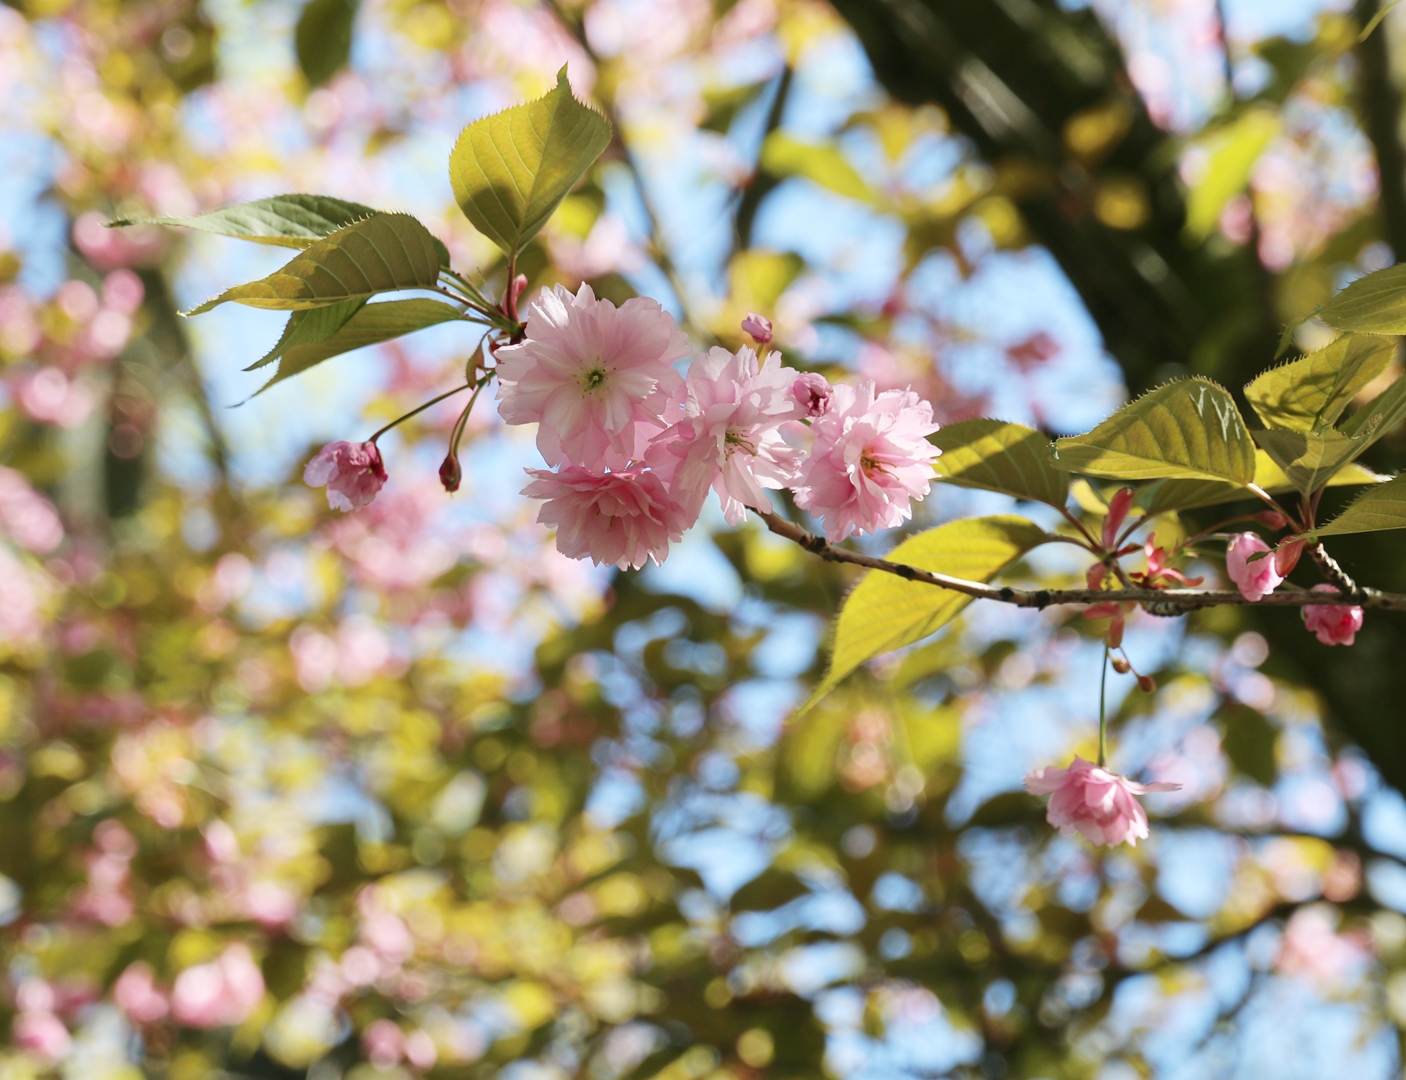 Kwitnąca gałązka drzewa migdałowca jako symbol piękna, spokoju i uważności